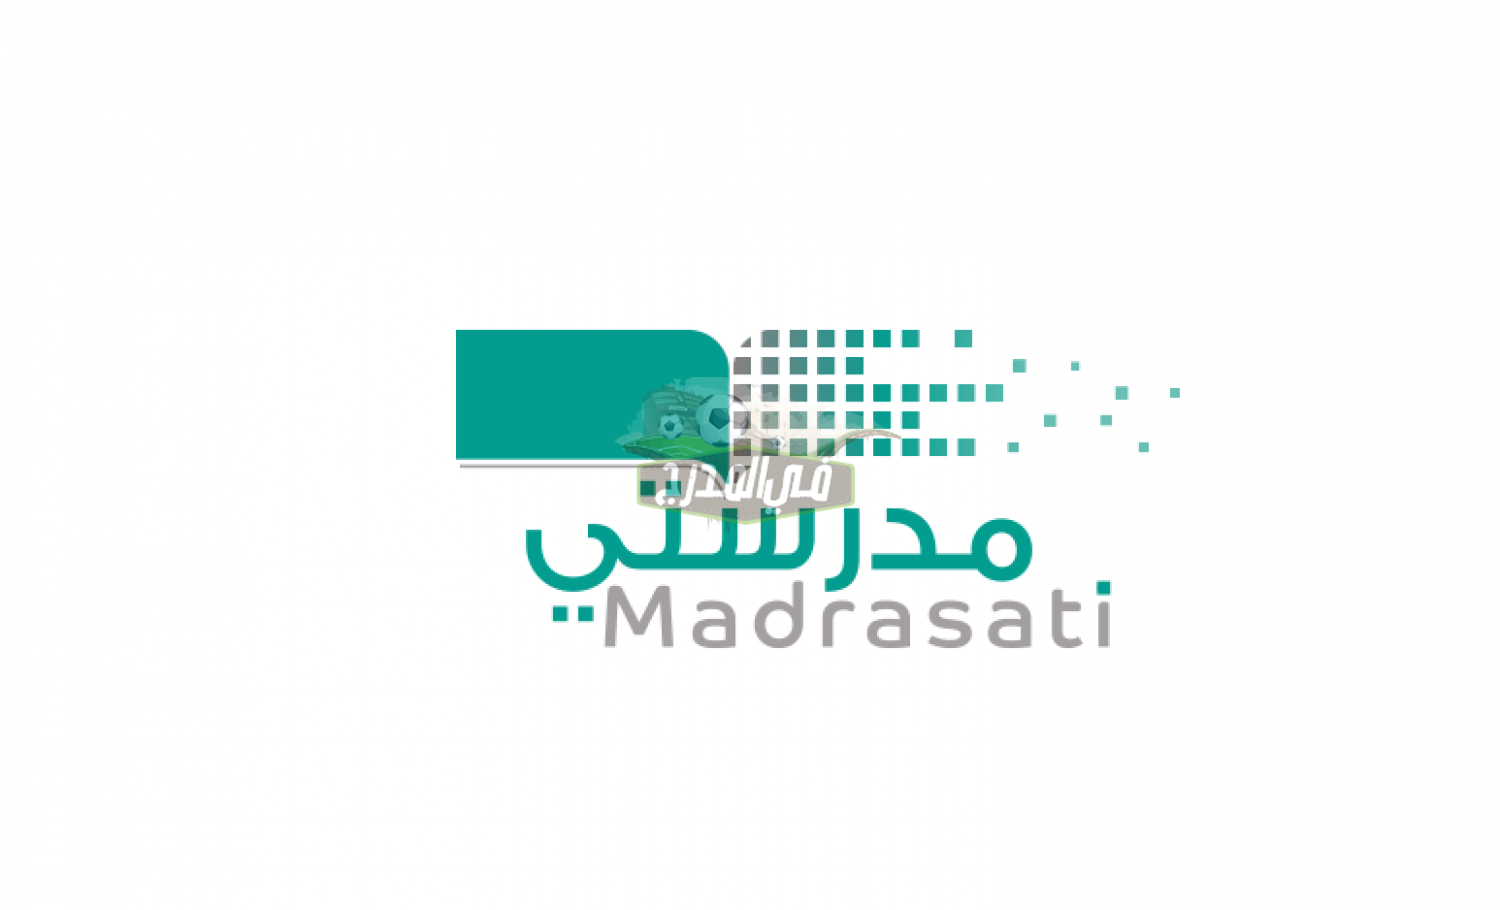 رابط منصة مدرستي schools.madrasati.sa.. منصة مدرستي دخول الطلاب على المنصة التعليمية الرئيسية في السعودية